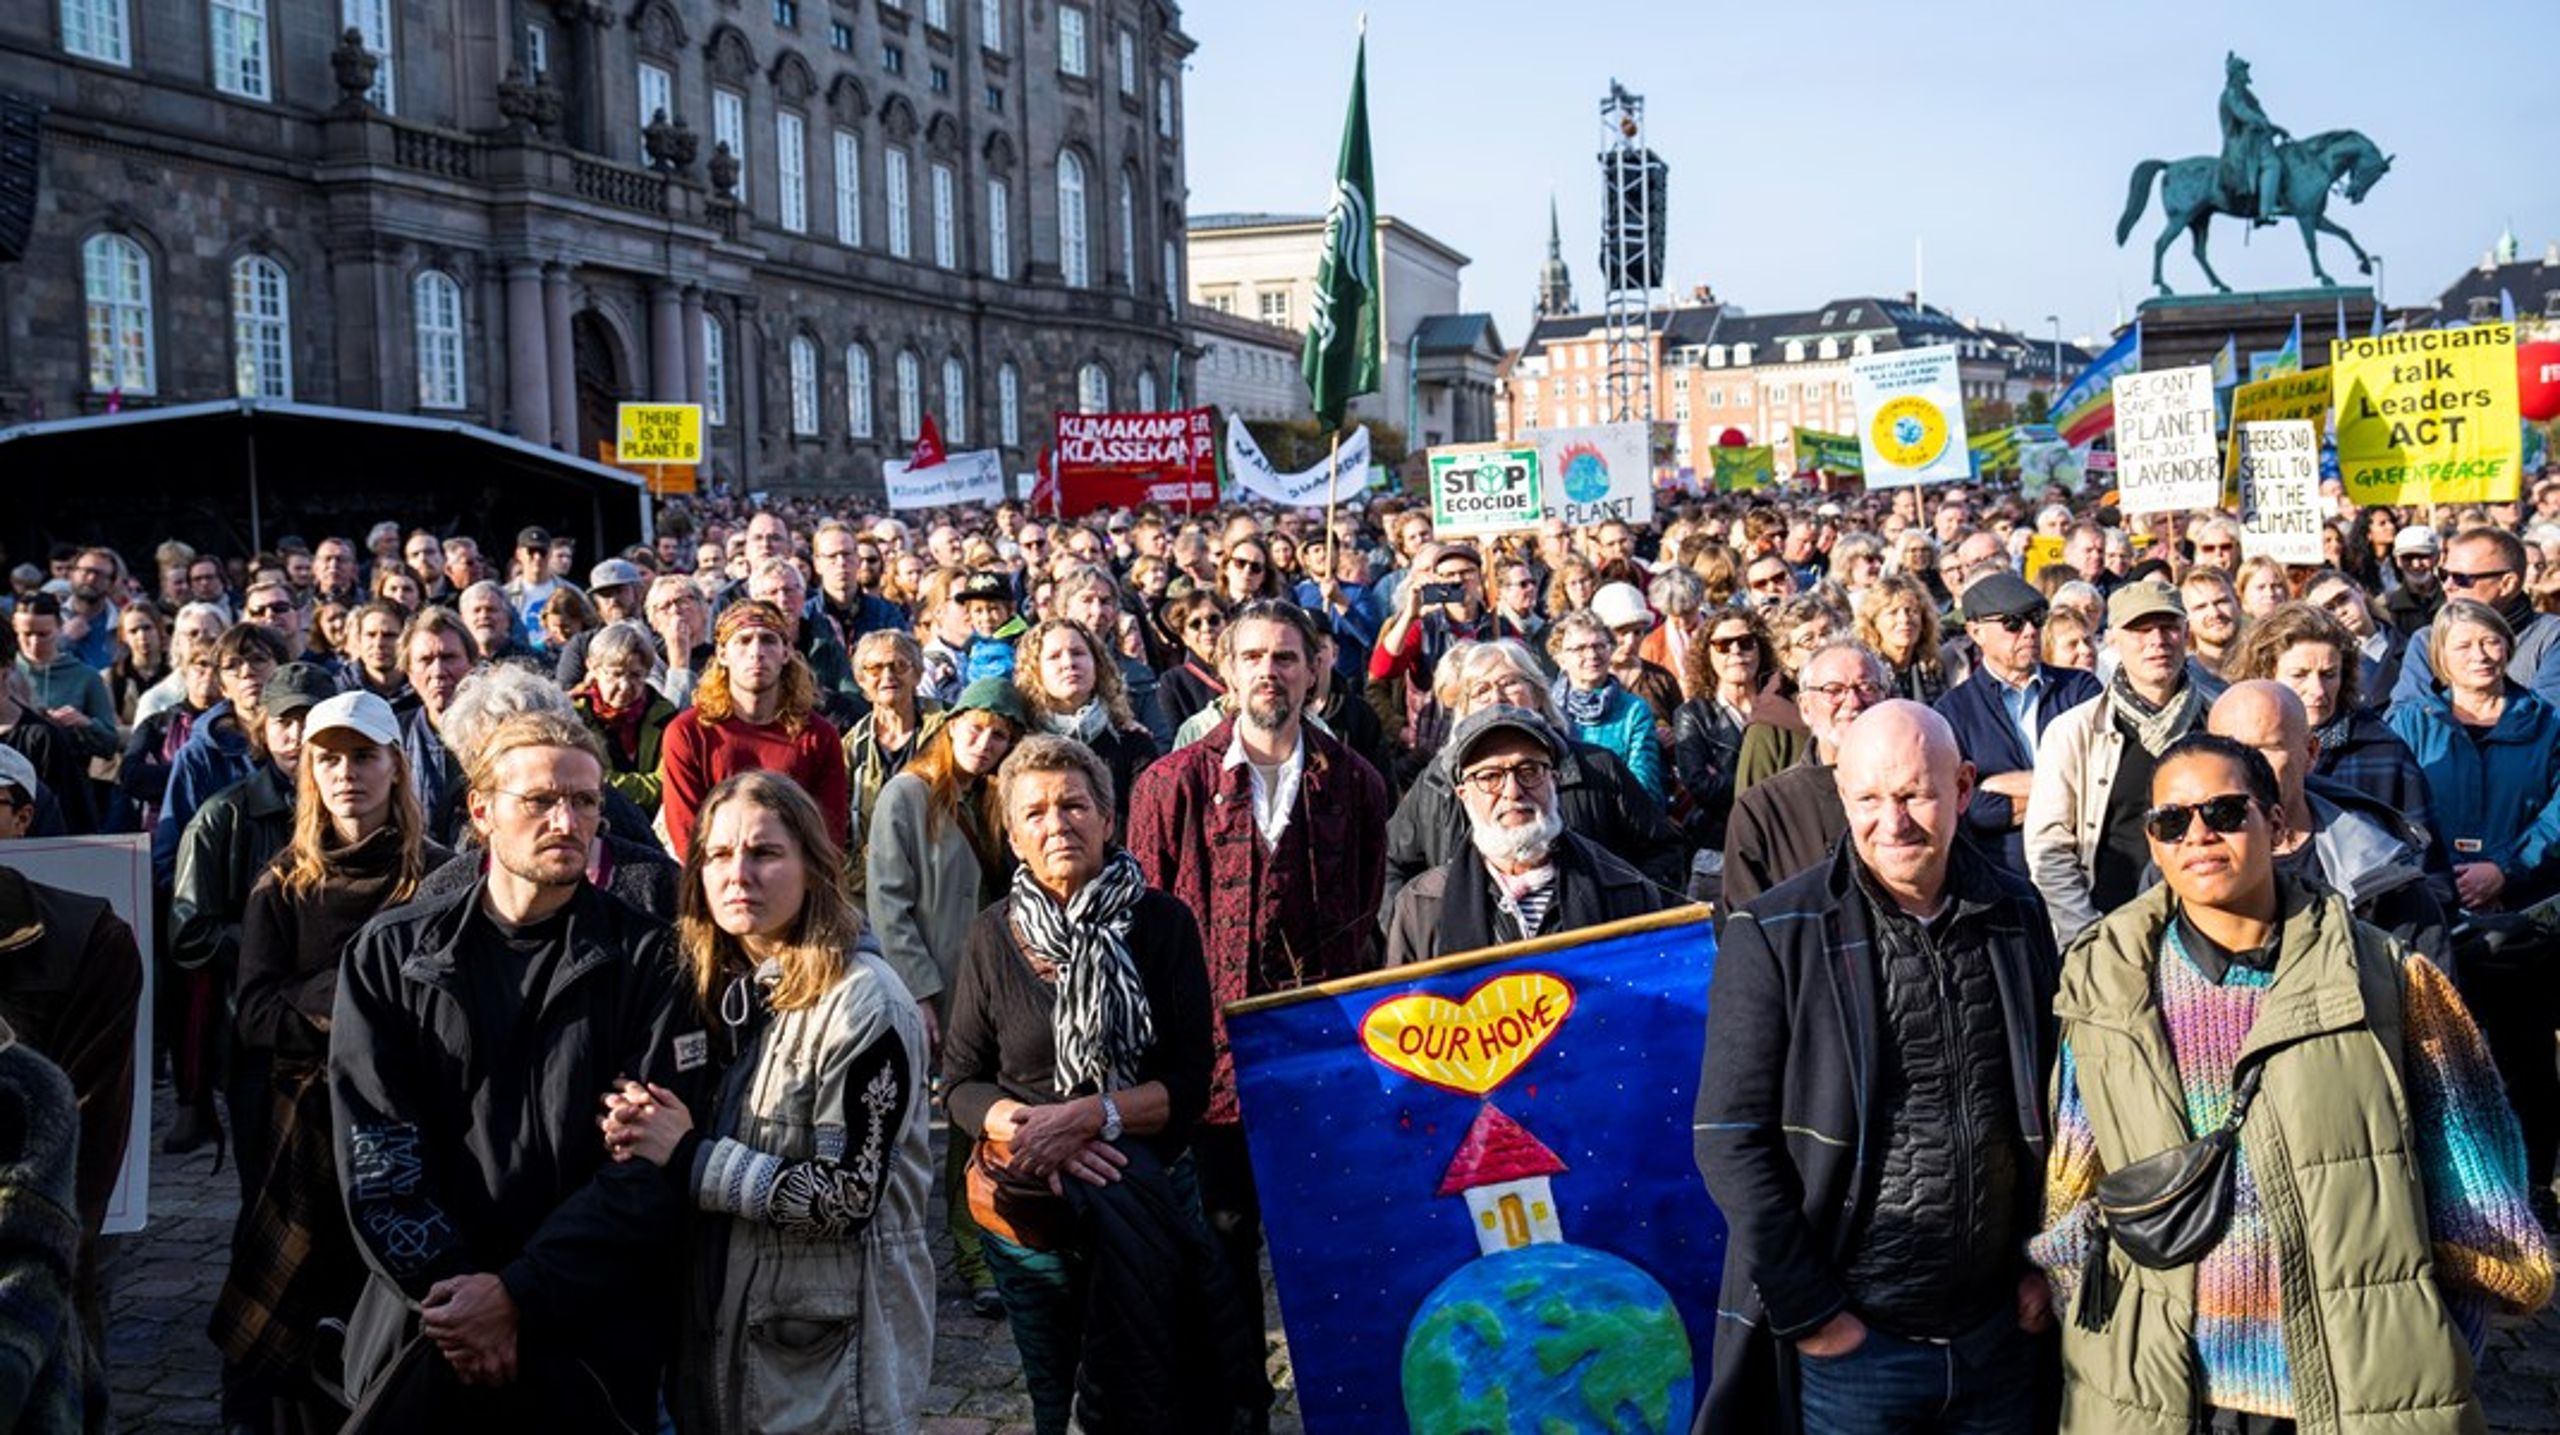 Miljø og klima er de vigtigste emner, som Europa-Parlamentet bør tage sig af, mener&nbsp;45 procent af de danske vælgere i en måling&nbsp;af Epinion for Altinget og DR forud for europaparlamentsvalget.